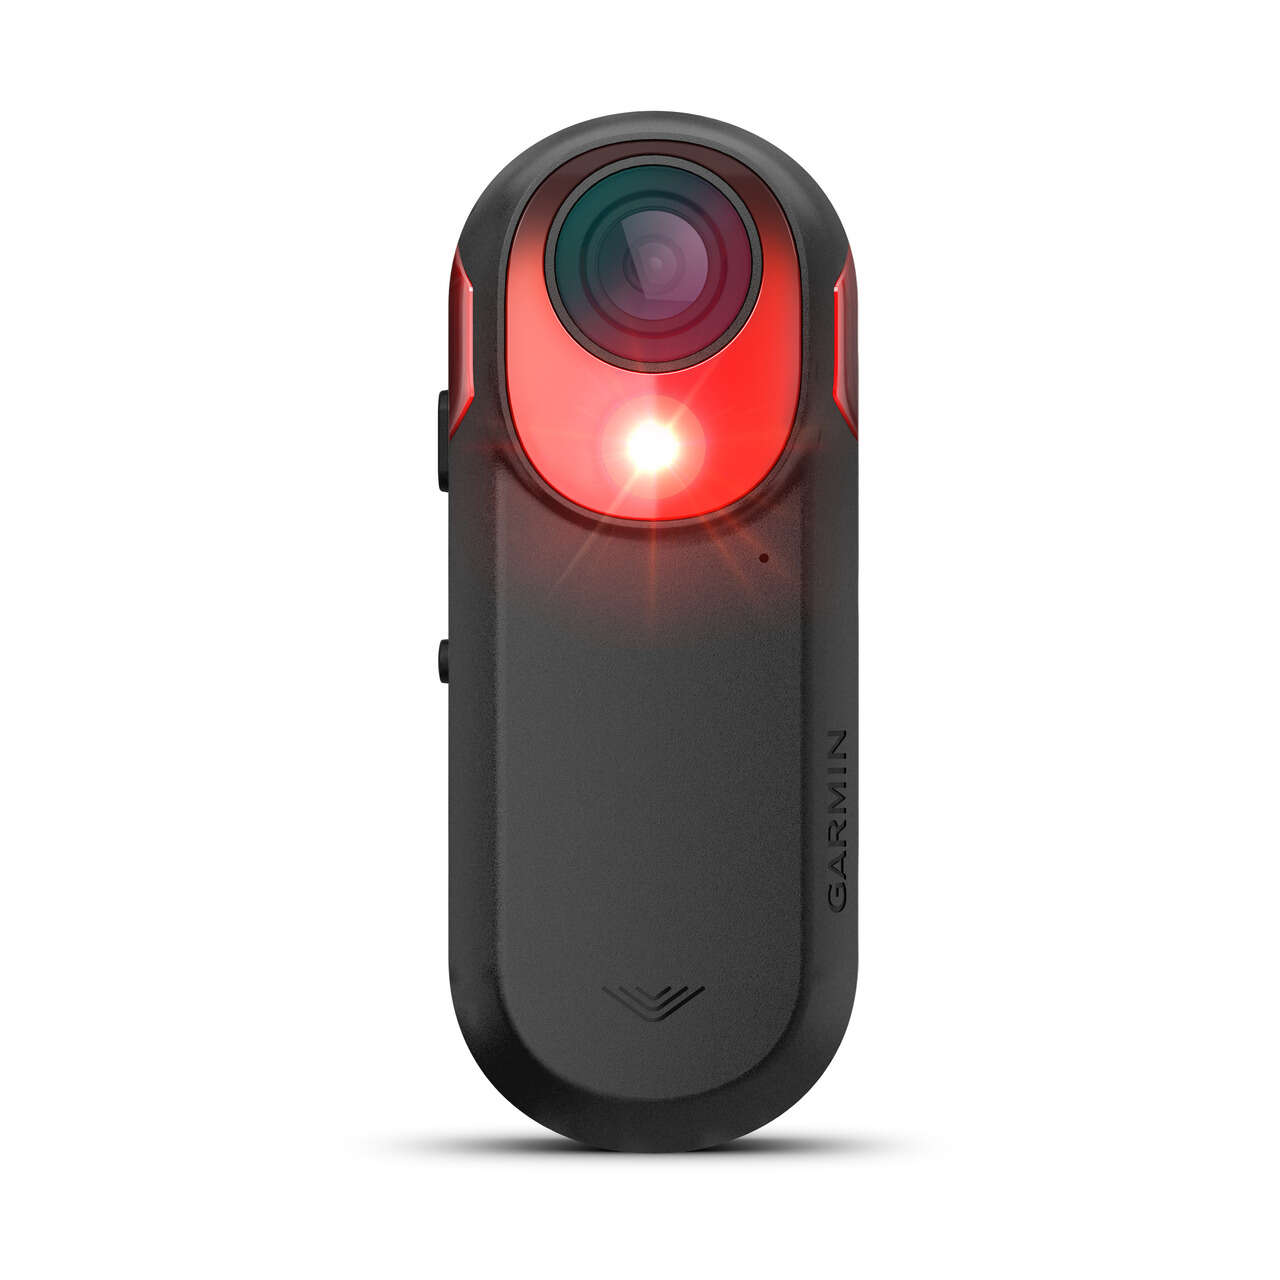 Garmin推出業界創新Varia RCT715智慧雷達尾燈行車記錄器提供後方車流警示自動偵測事故功能與多段式尾燈。官方提供